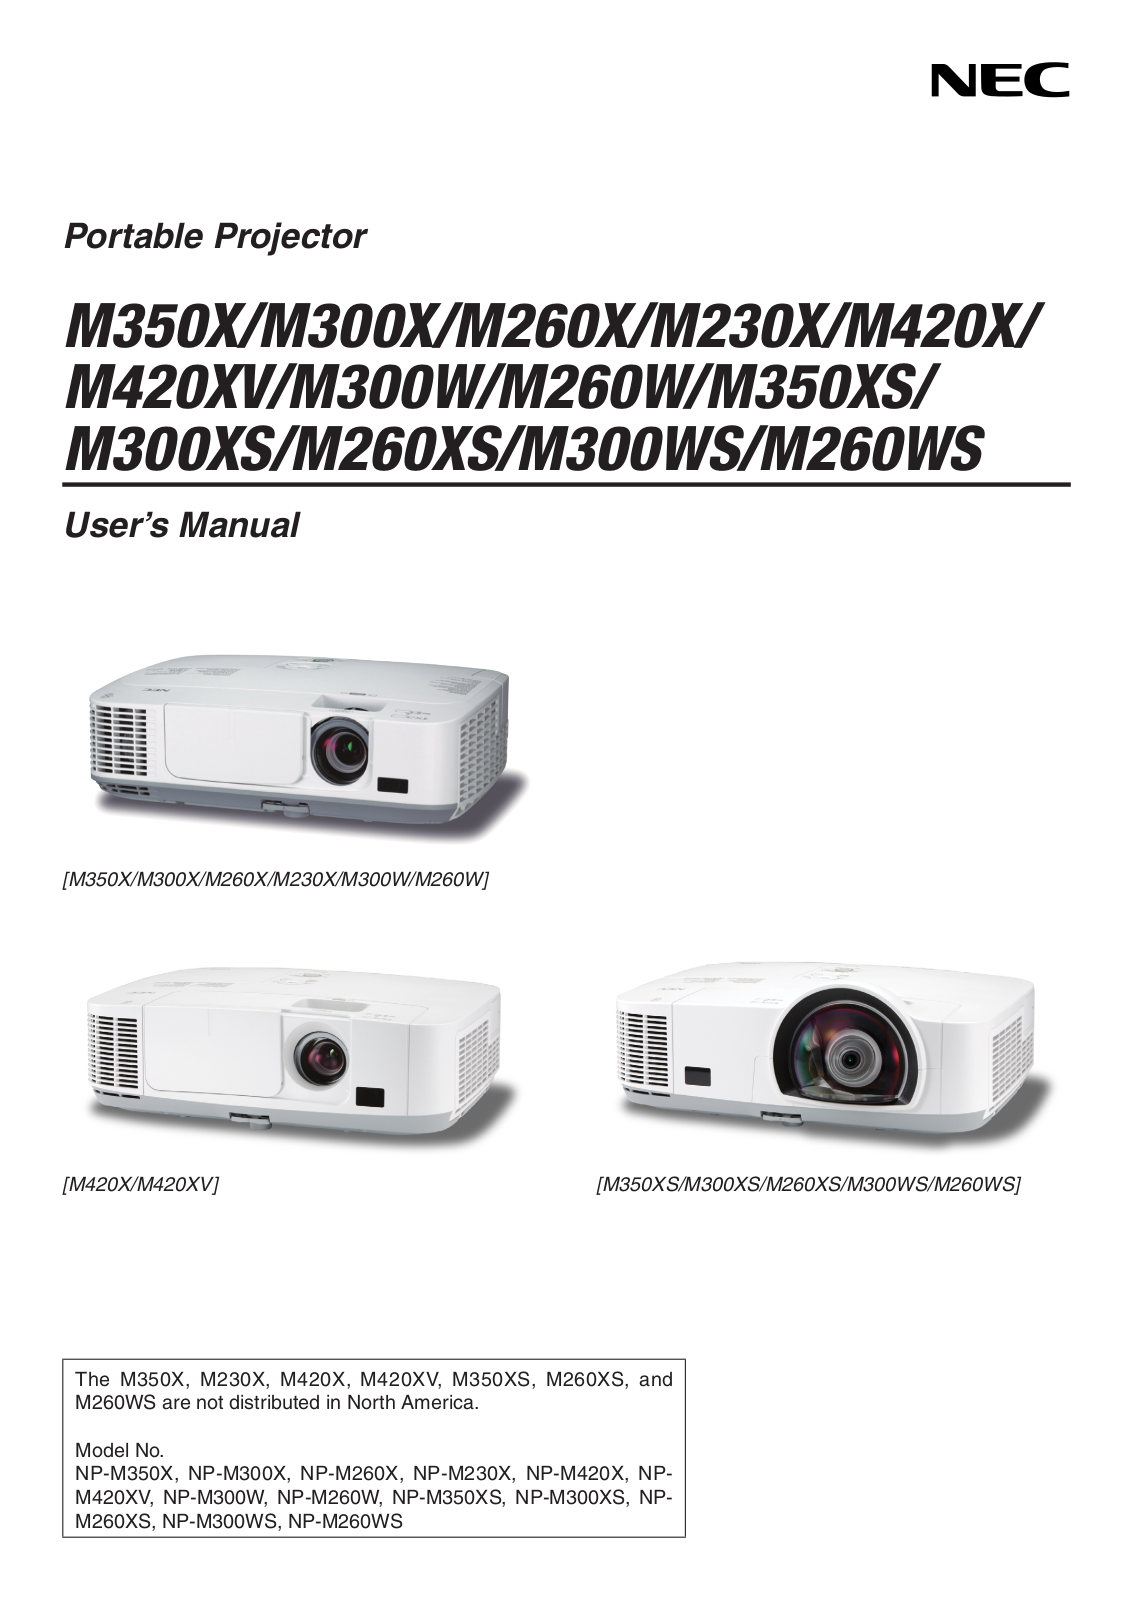 NEC M260W, M300XS, M300X, M260X, M350X User Manual